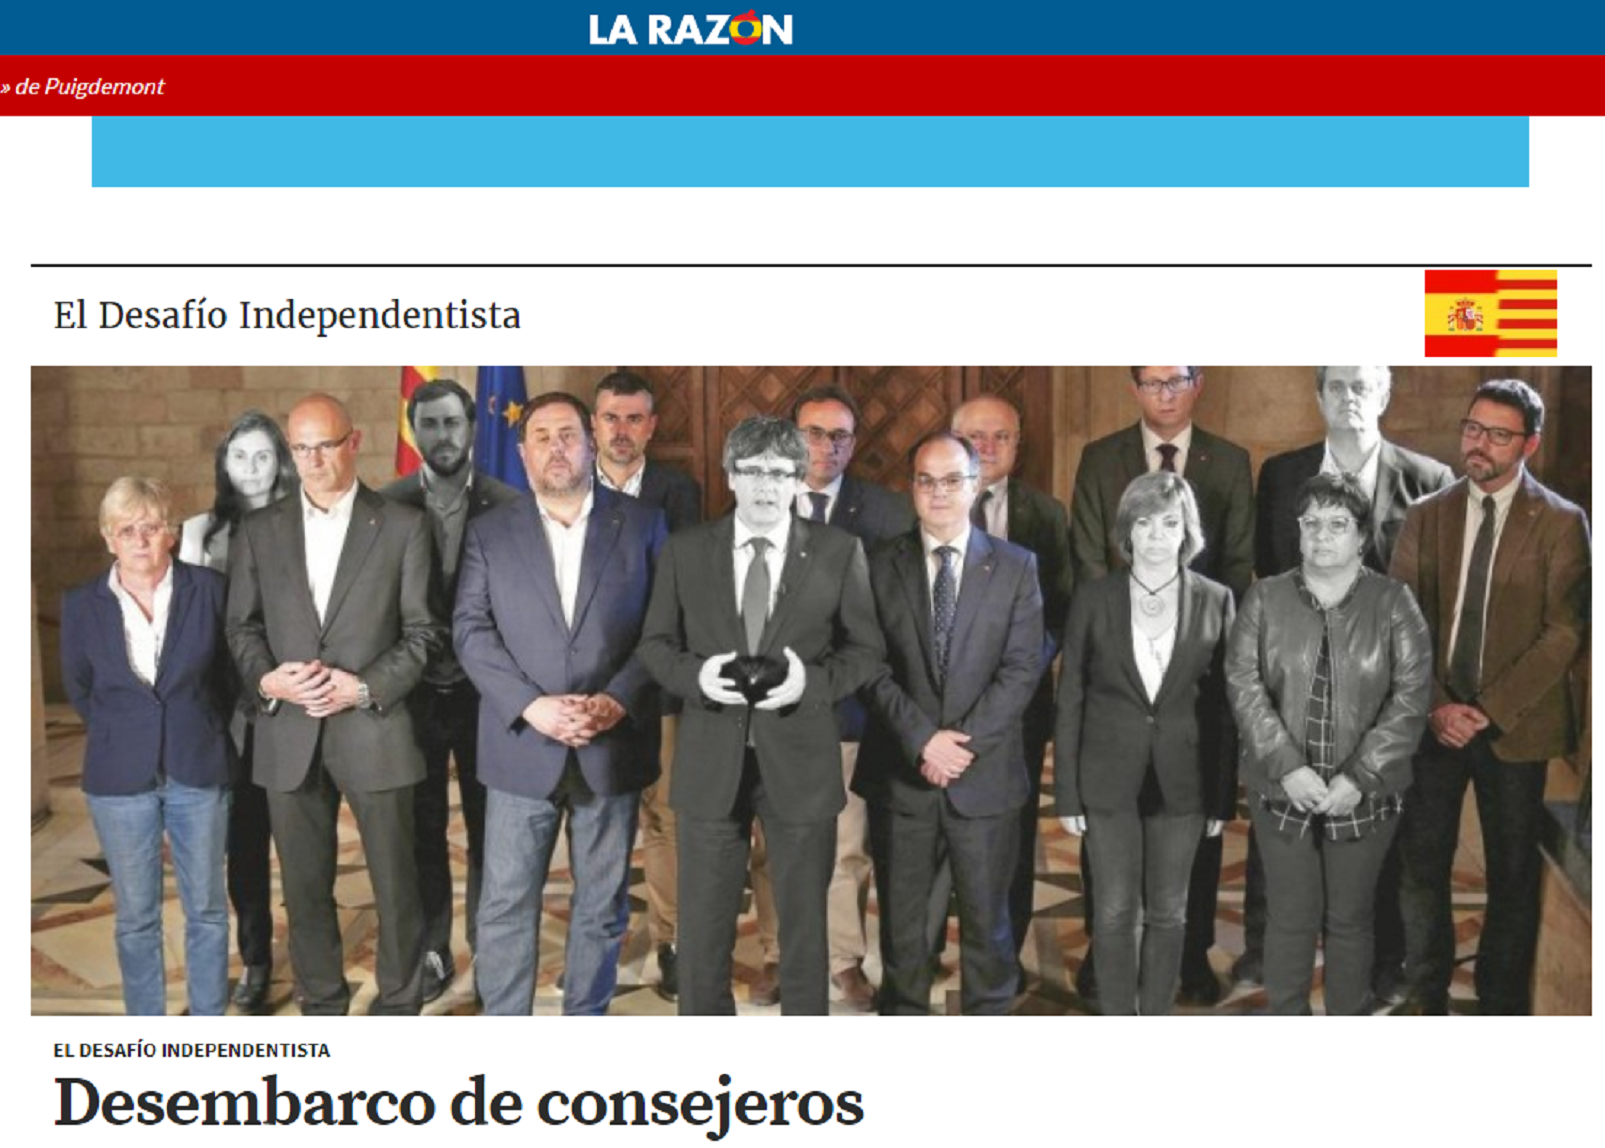 La premsa espanyola ja demana obertament que Puigdemont vagi a la presó